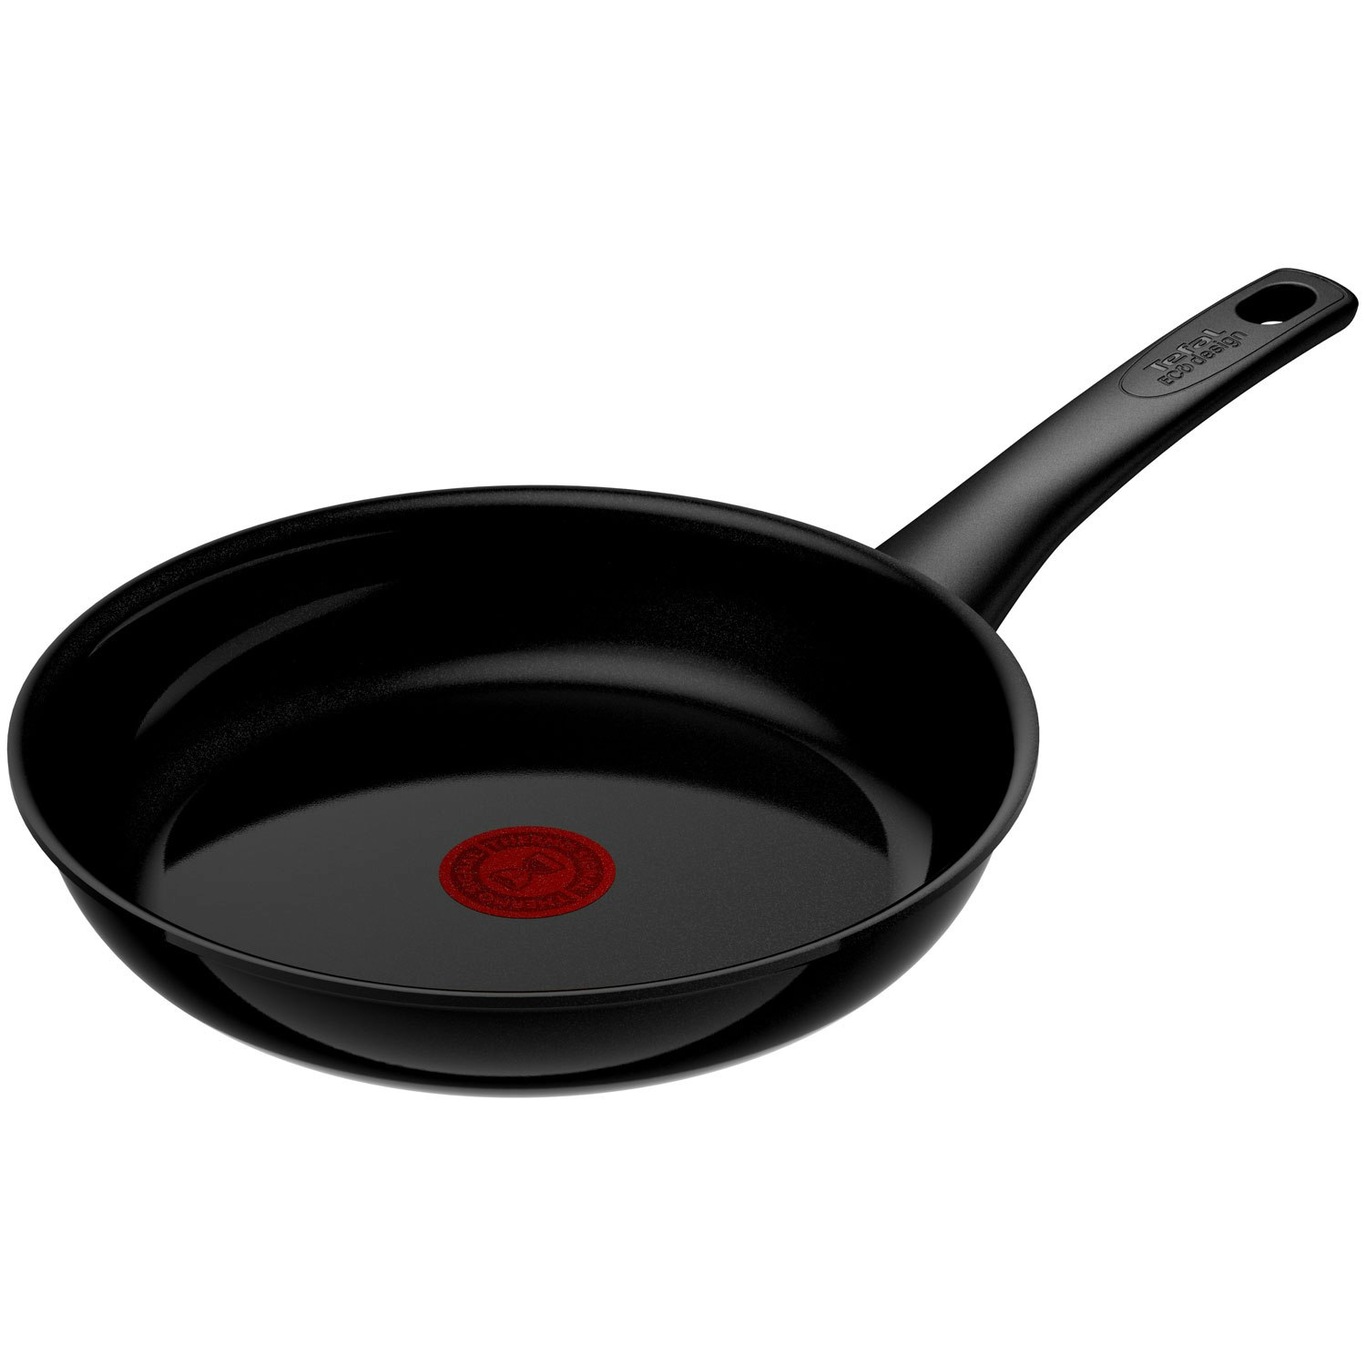 Tefal Renew Black All-purpose Frying Pan - 24cm